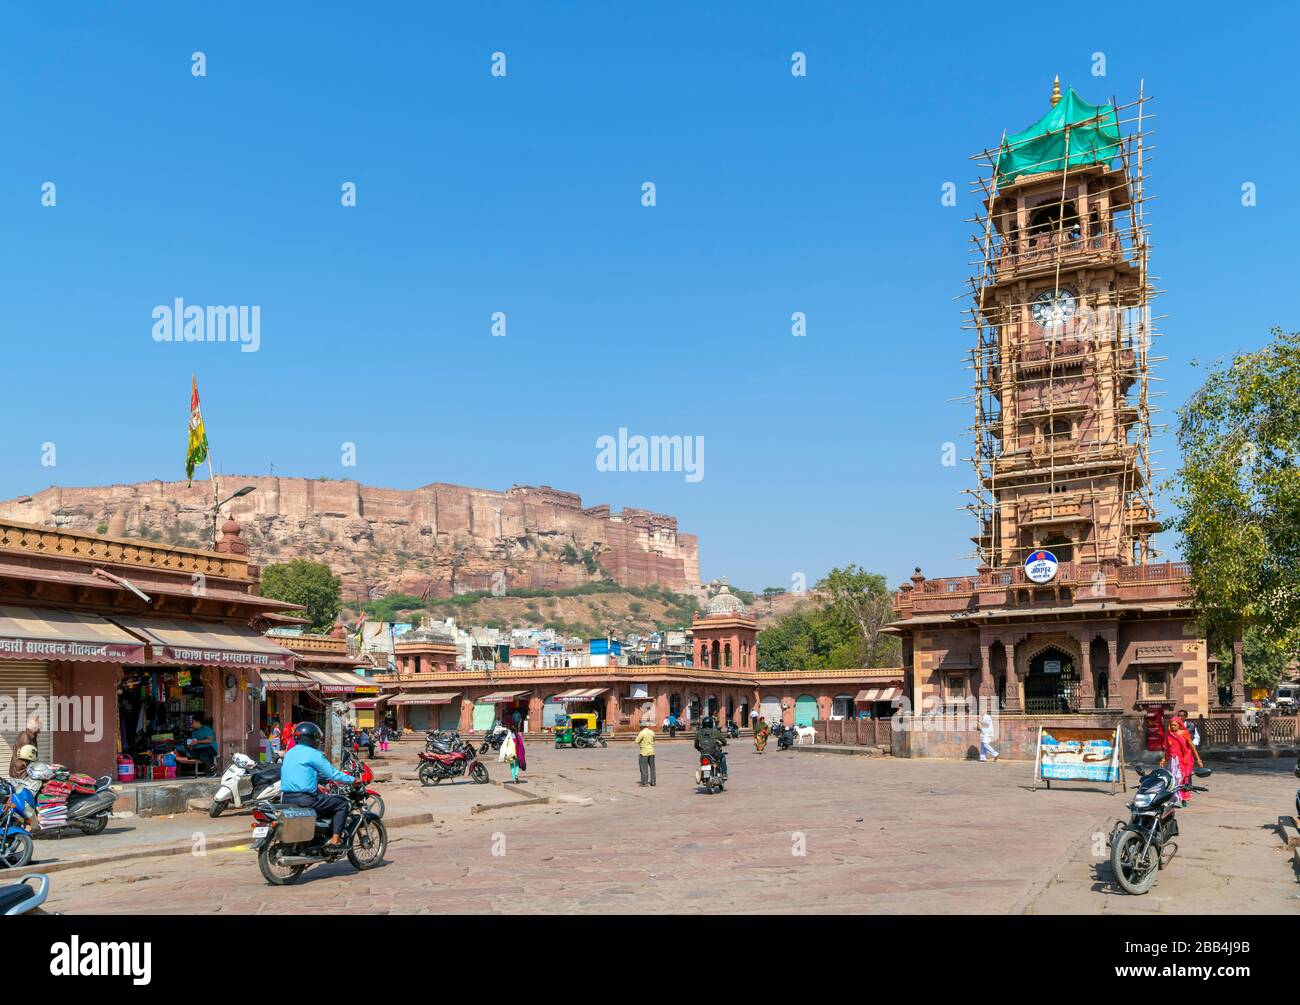 Le clocher (Ghanta Ghar) du marché de Sardar avec le fort Mehrangarh derrière, Jodhpur, Rajasthan, Inde Banque D'Images